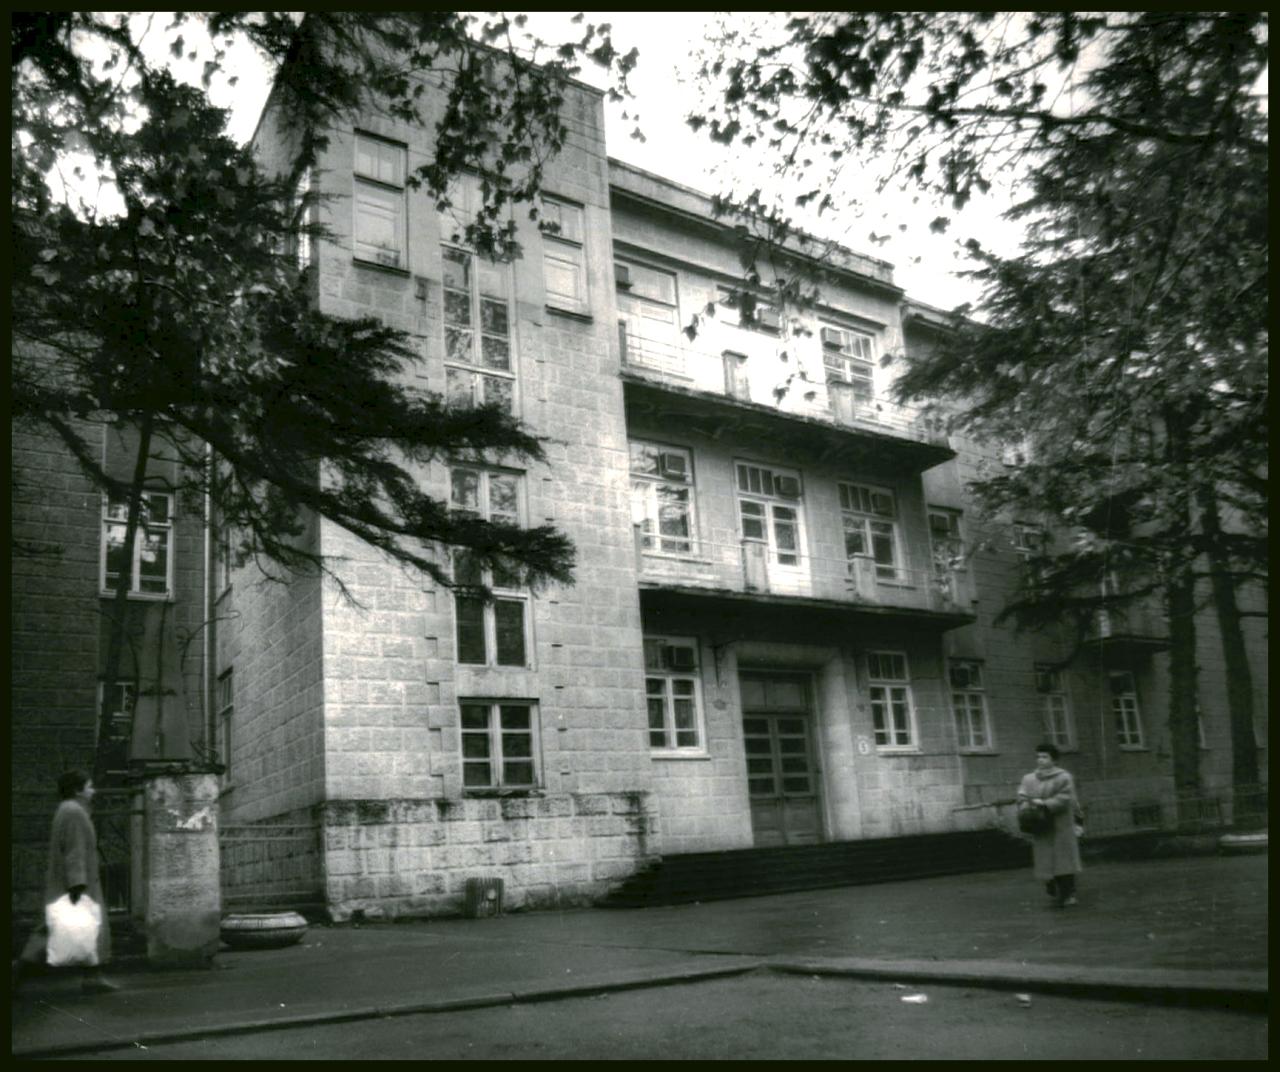 Չորրորդ վարչության հիվանդանոցը ( Лечкомиссия ) Երևանում